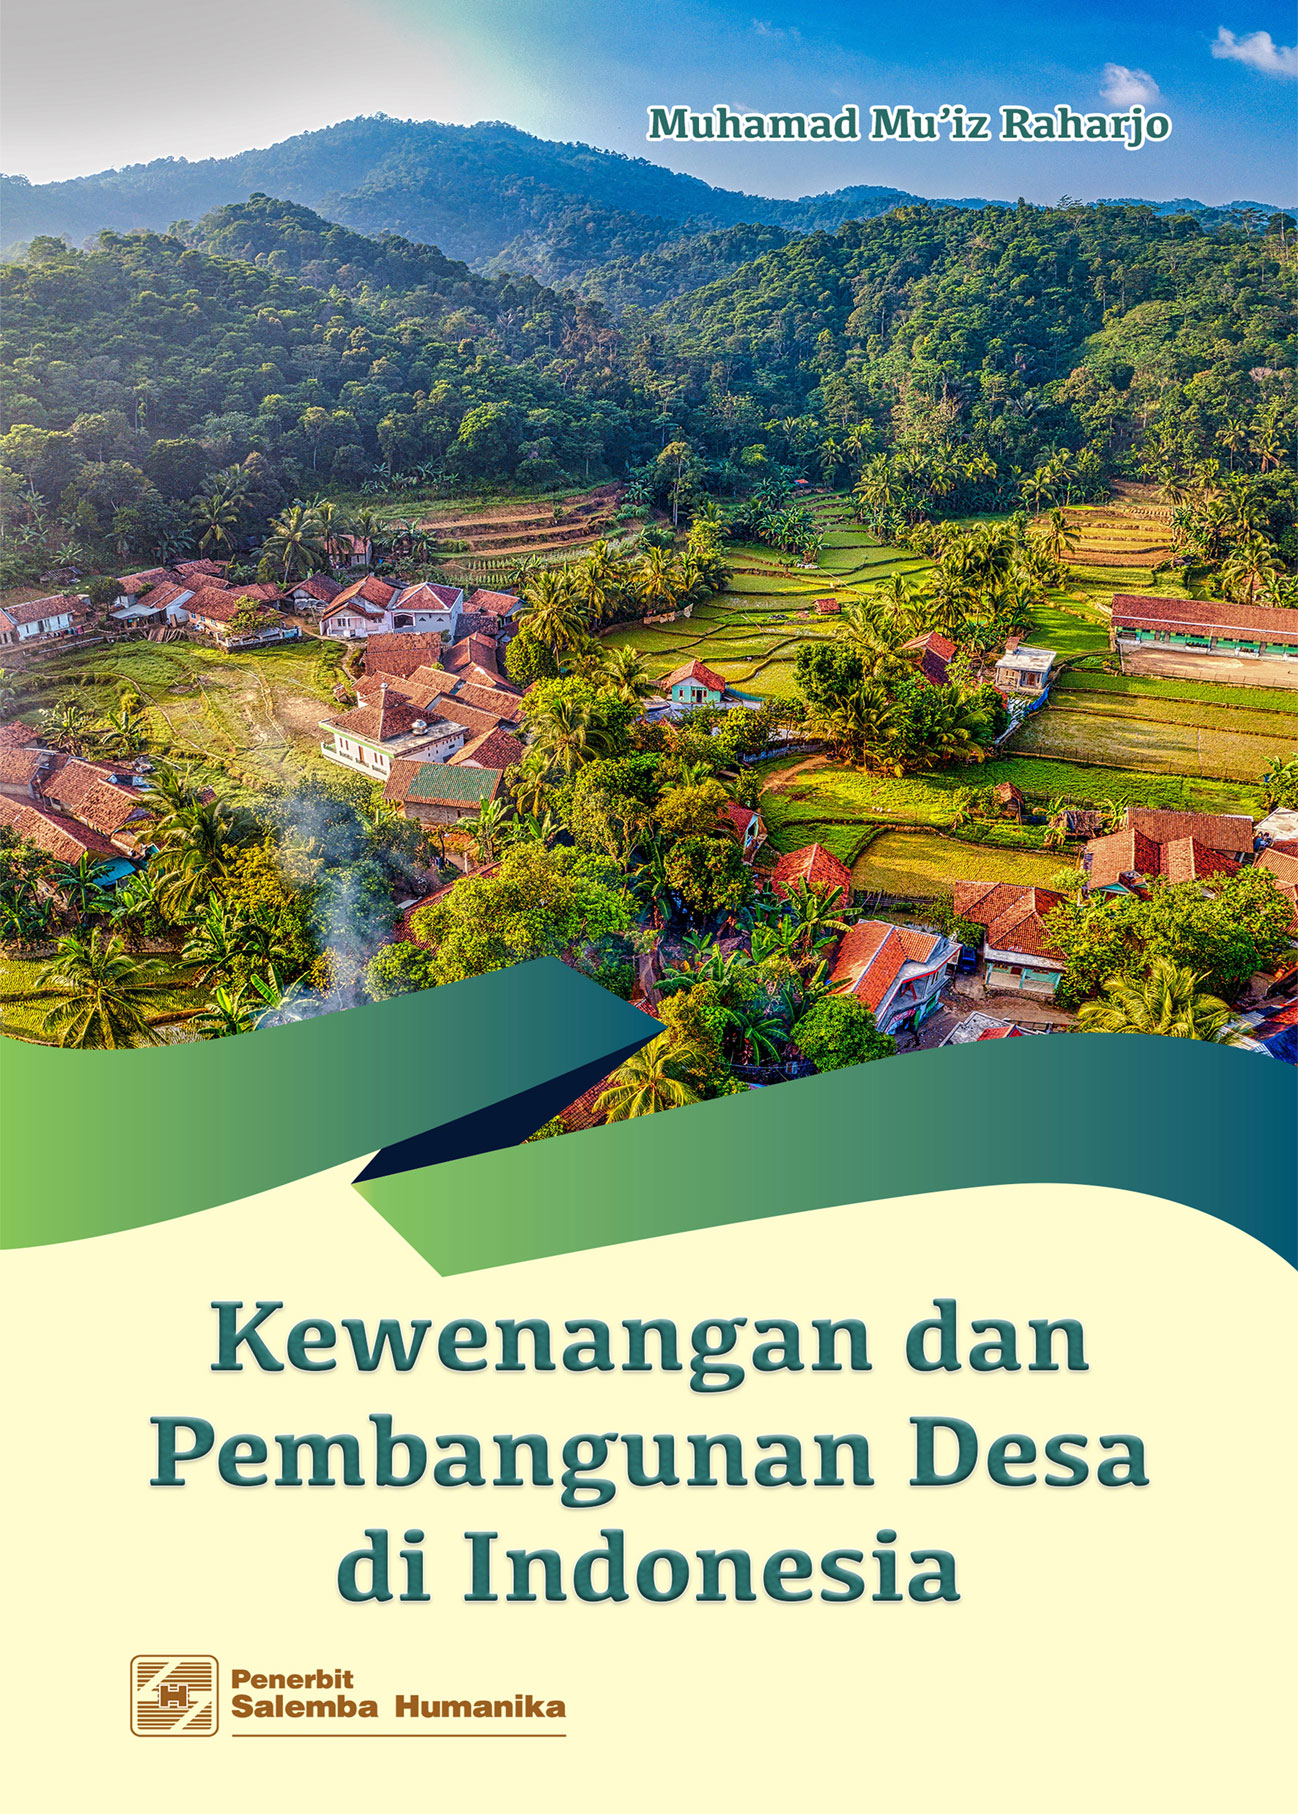 eBook Kewenangan dan Pembangunan Desa di Indonesia (Muhamad Mu?iz Raharjo)